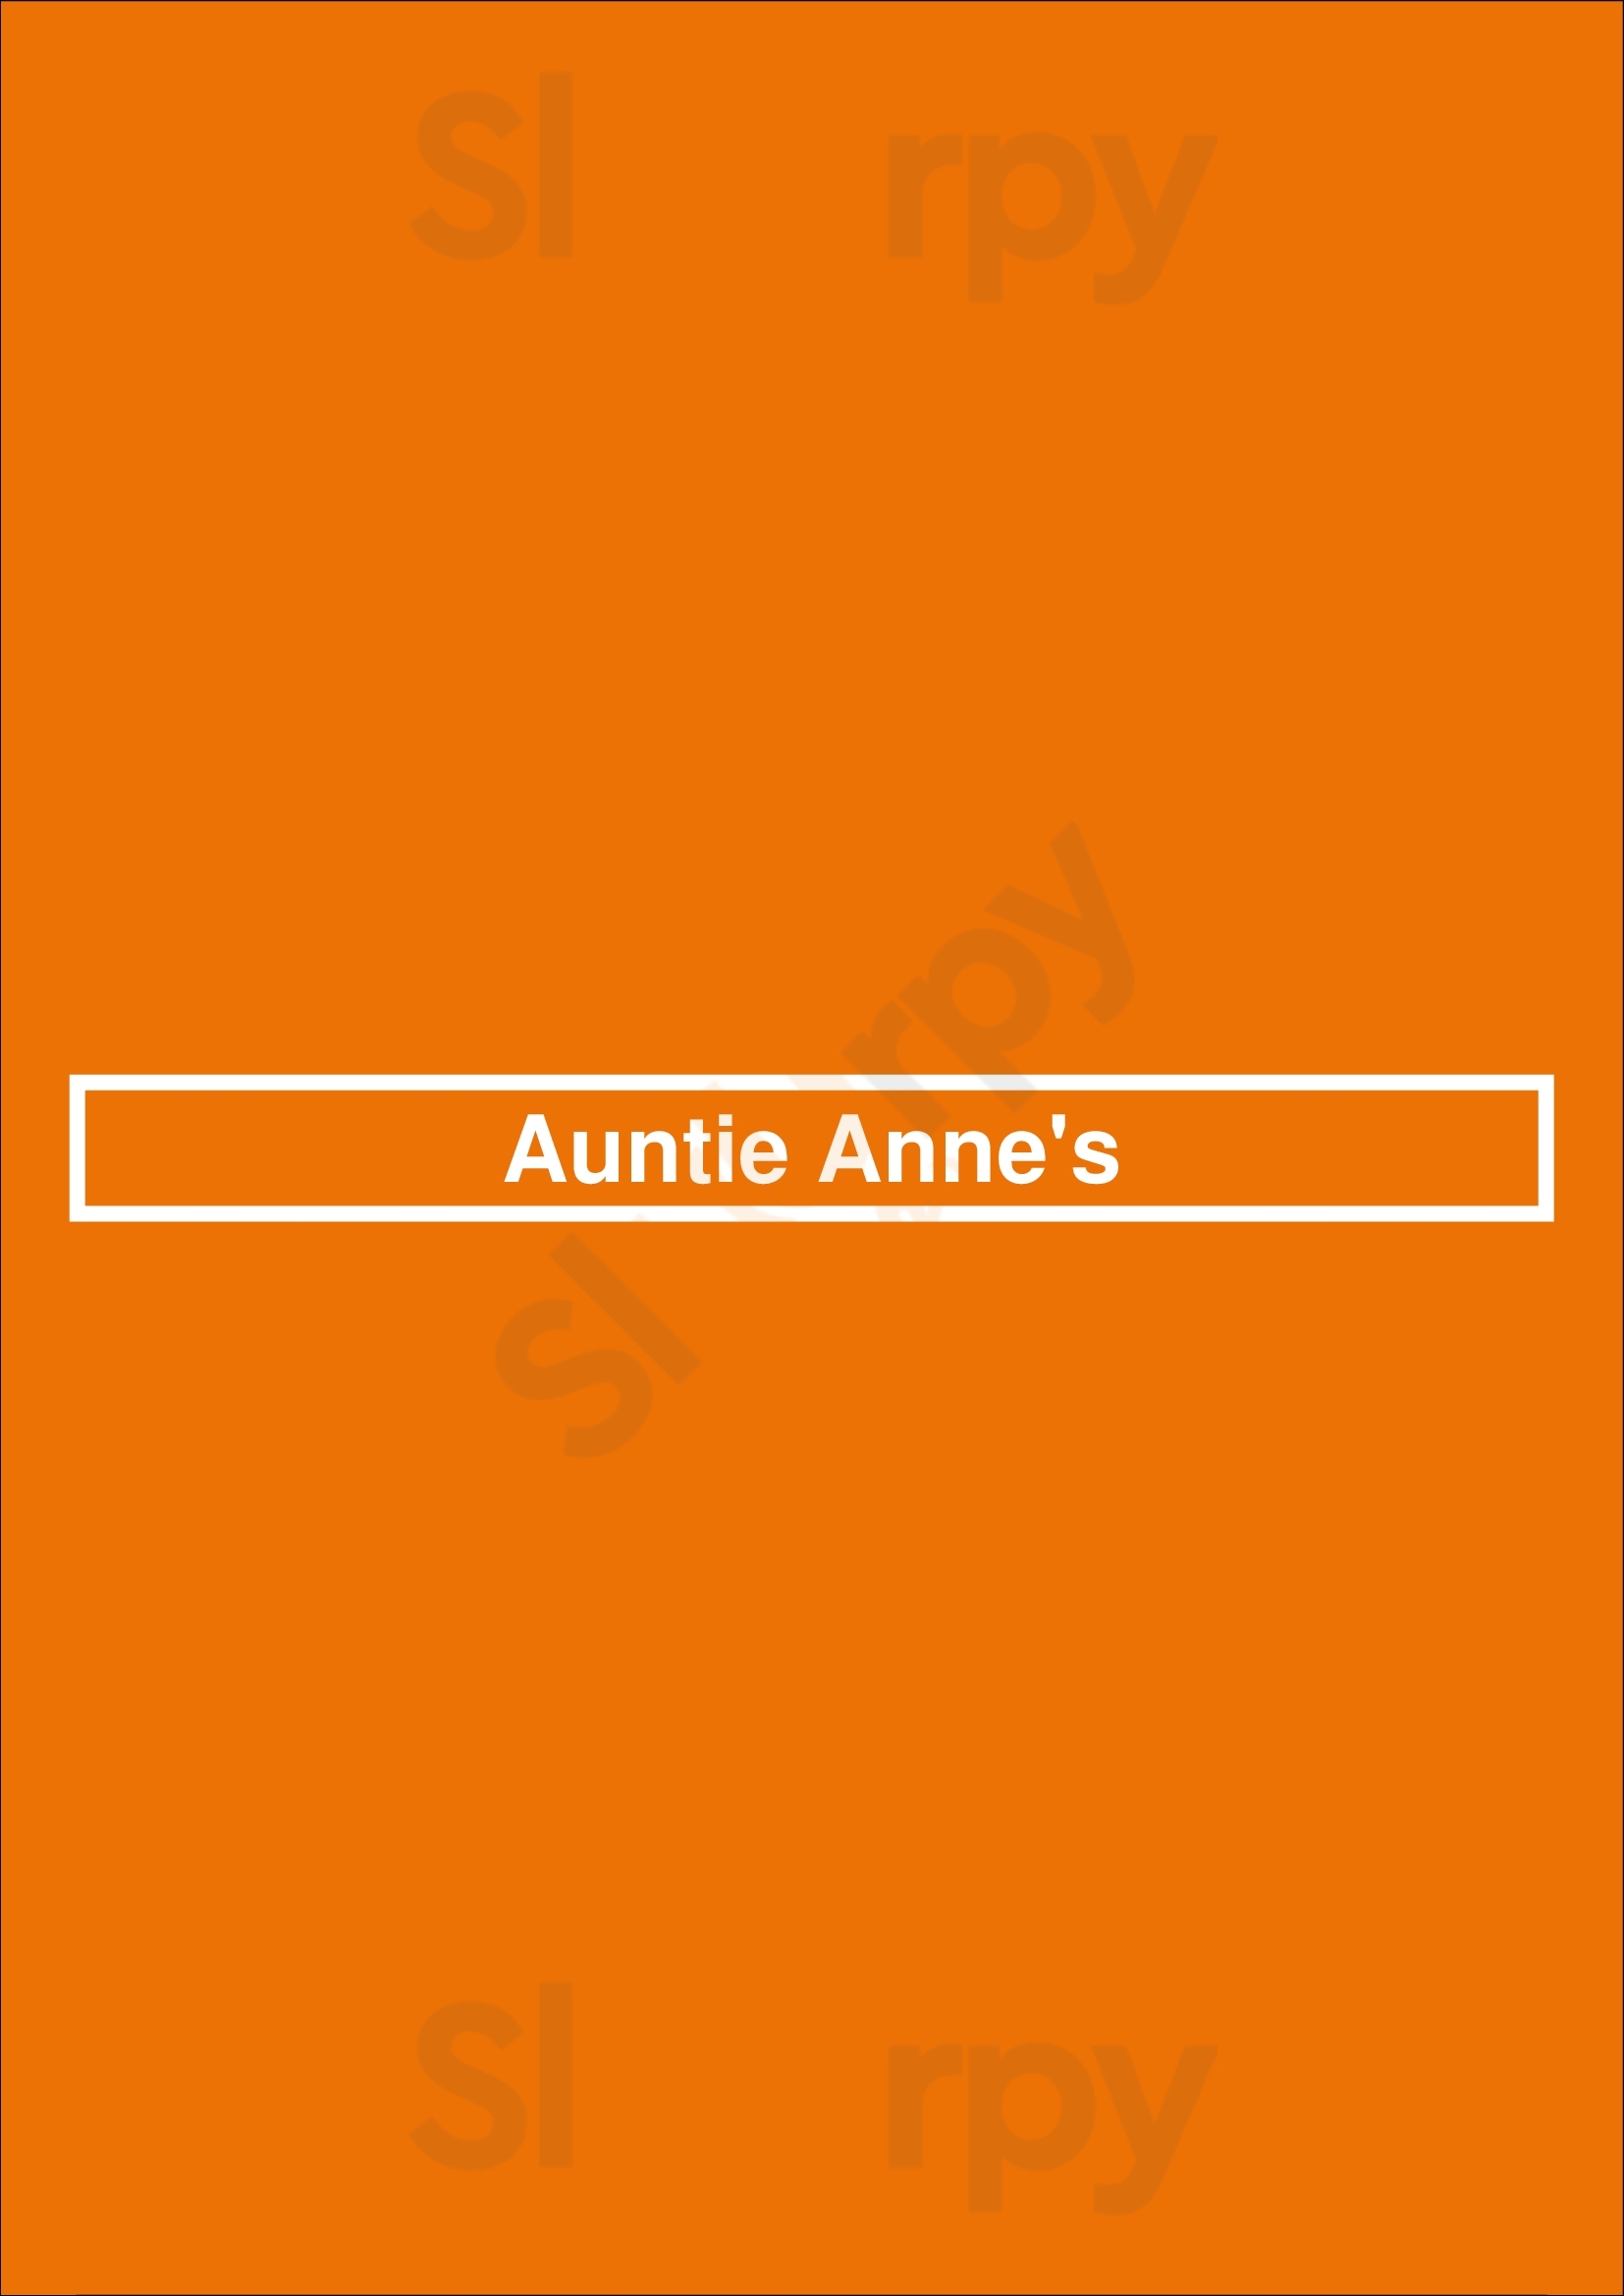 Auntie Anne's Chicago Menu - 1